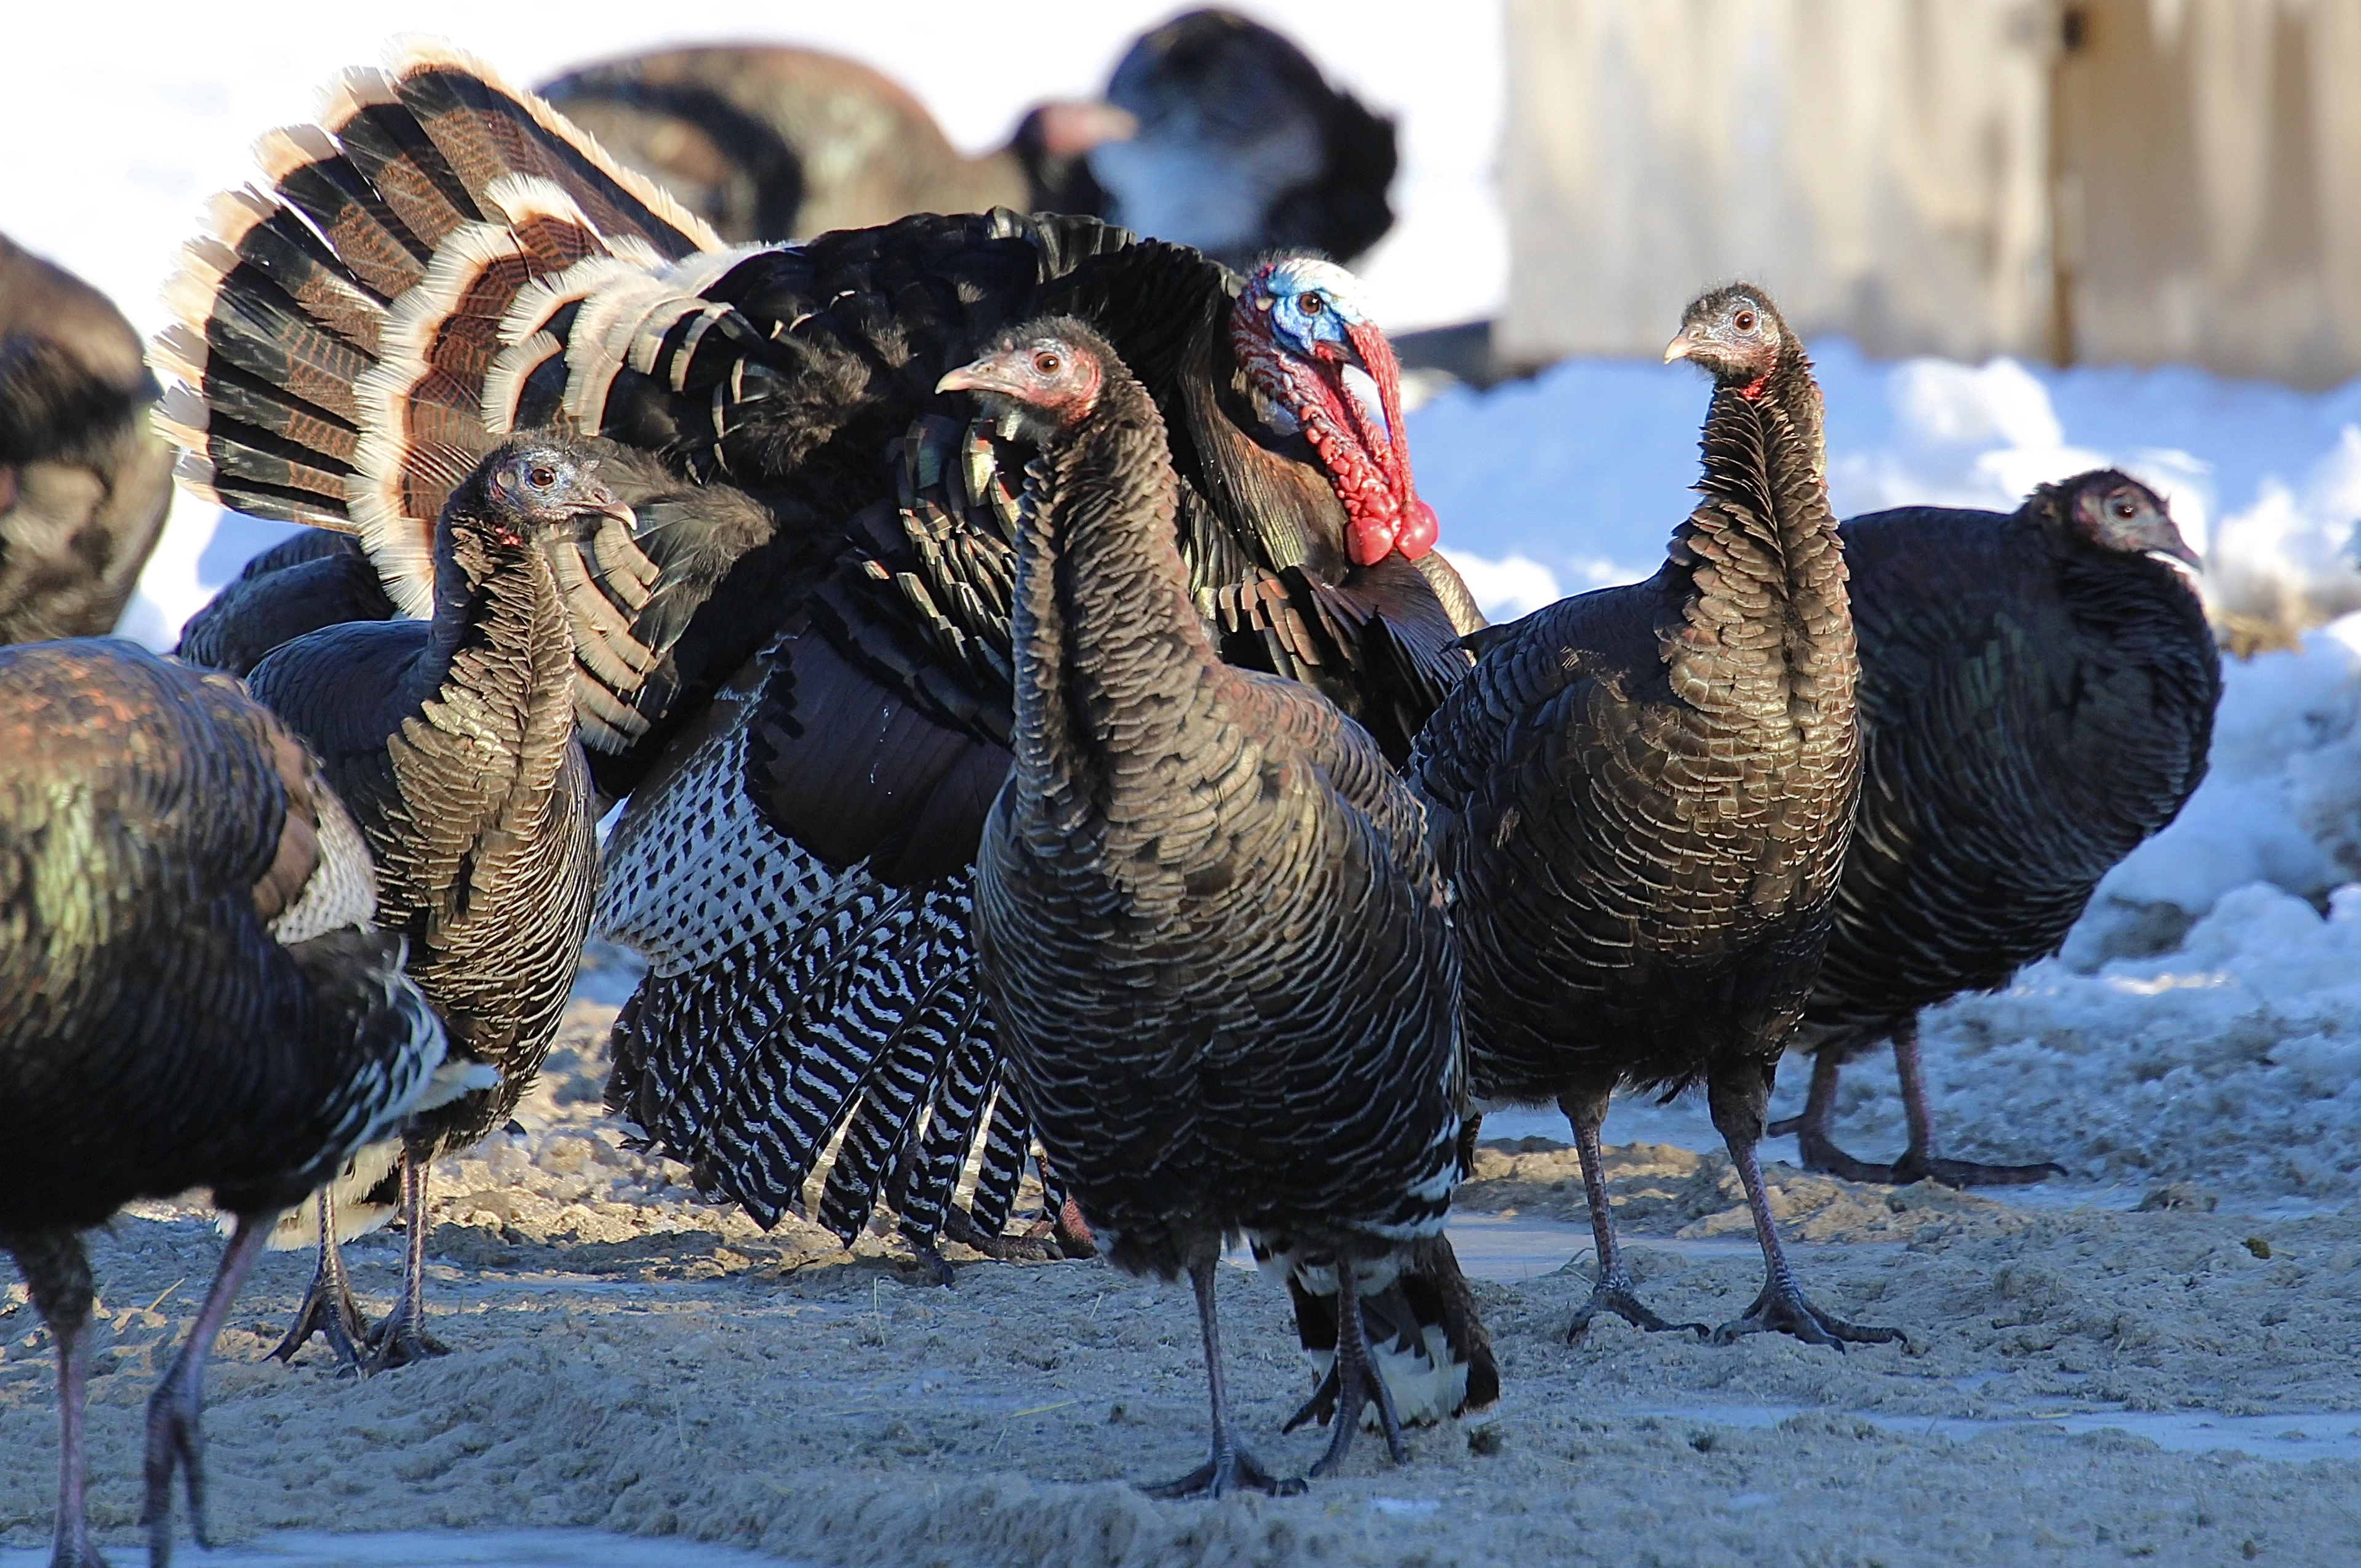 Wild turkeys gather in a flock on a rural Nebraska road